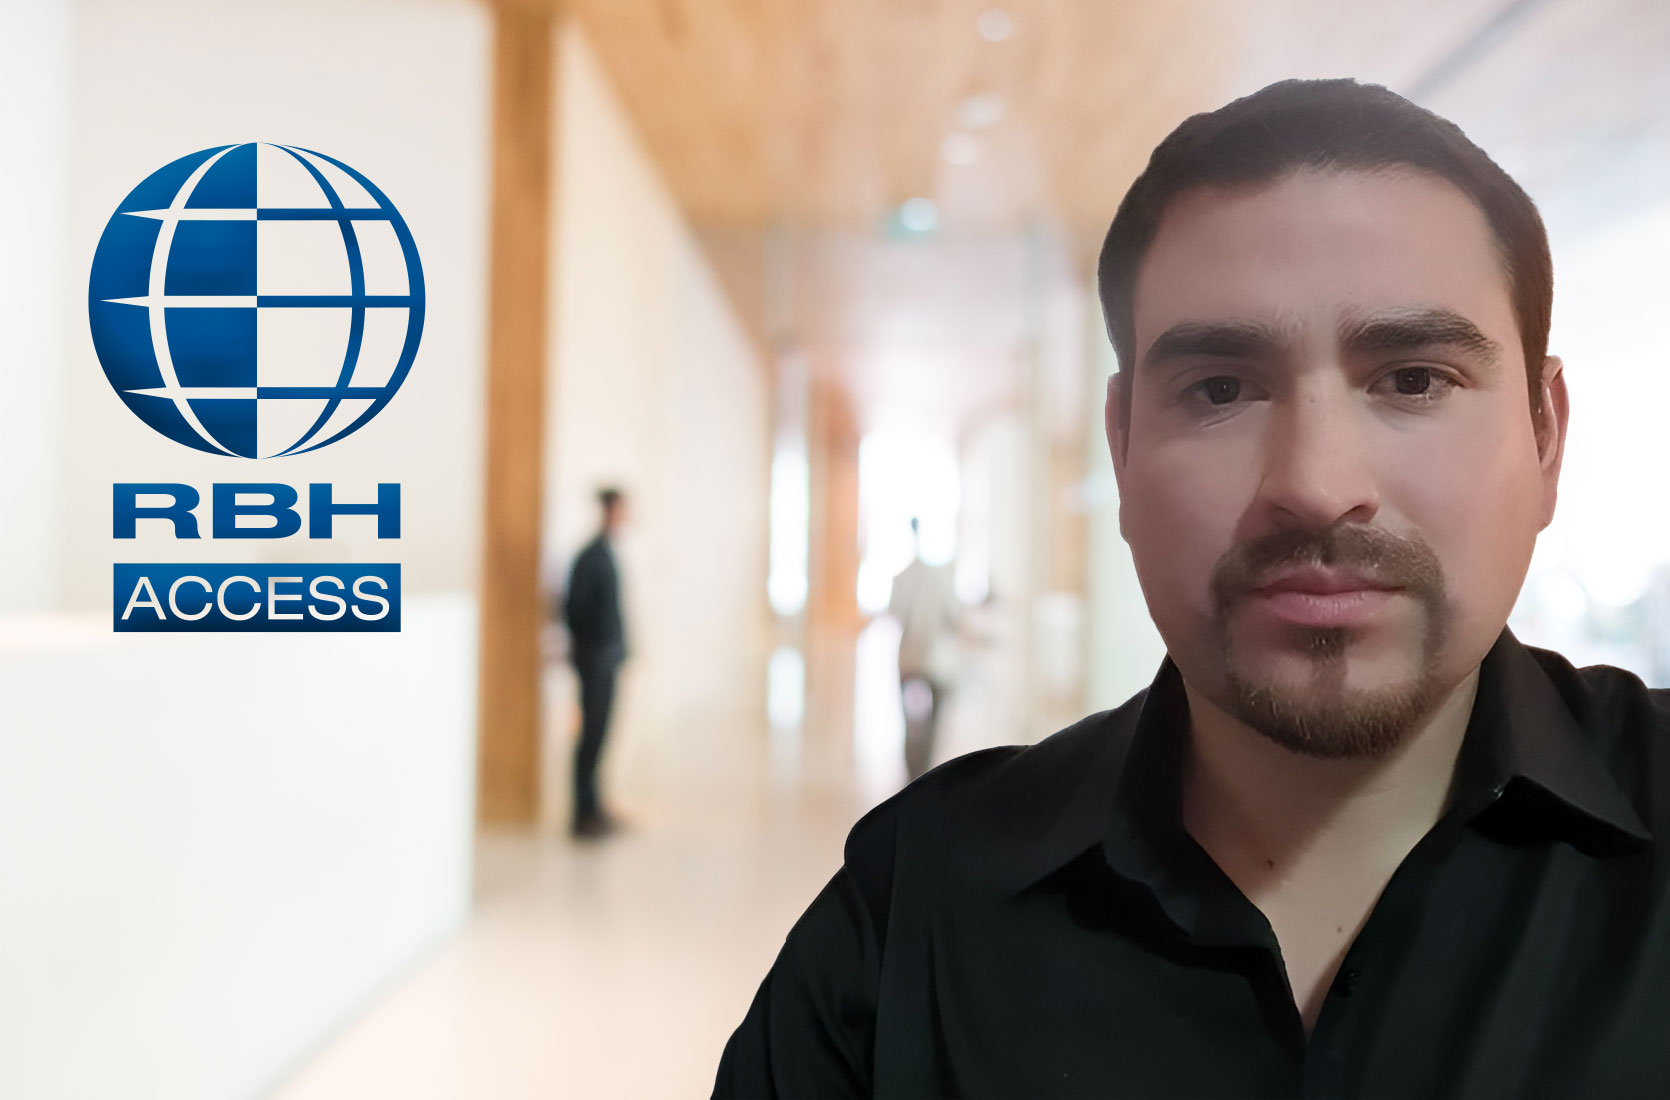 Jonatán Reyes est membre de l'équipe RBH Access Technologies comme directeur régional des ventes pour le continent sud